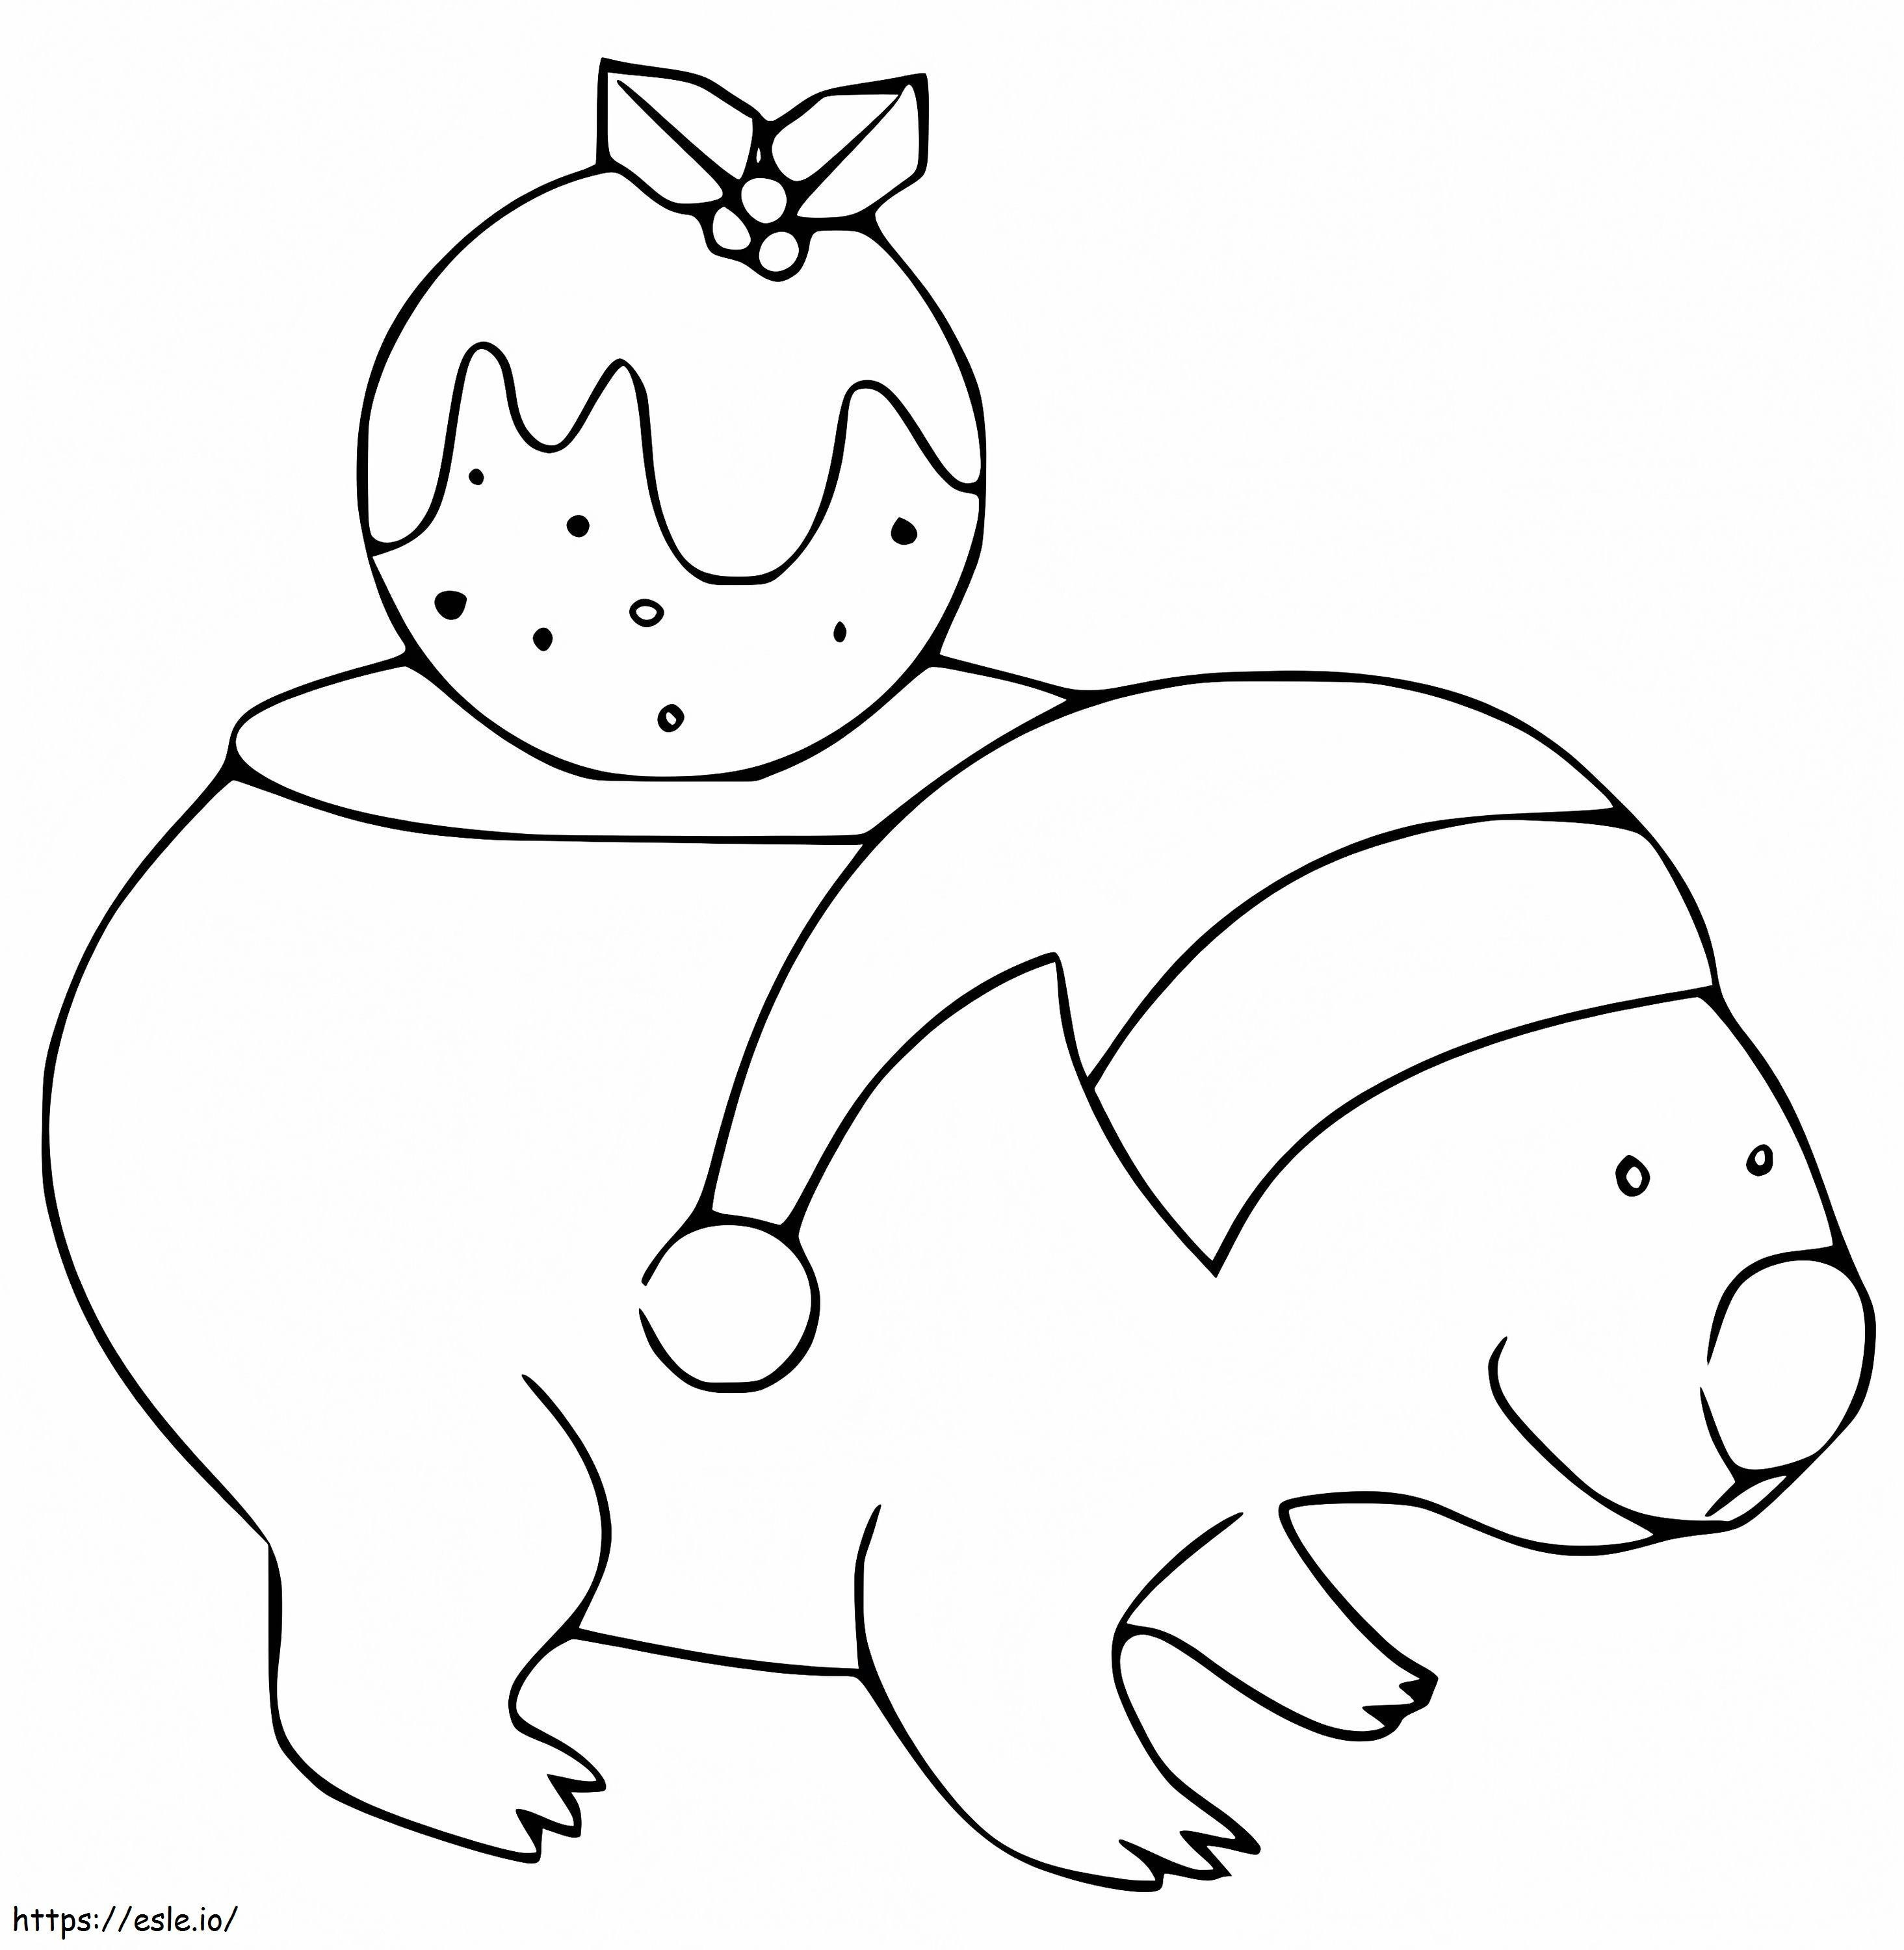 Weihnachts-Wombat ausmalbilder